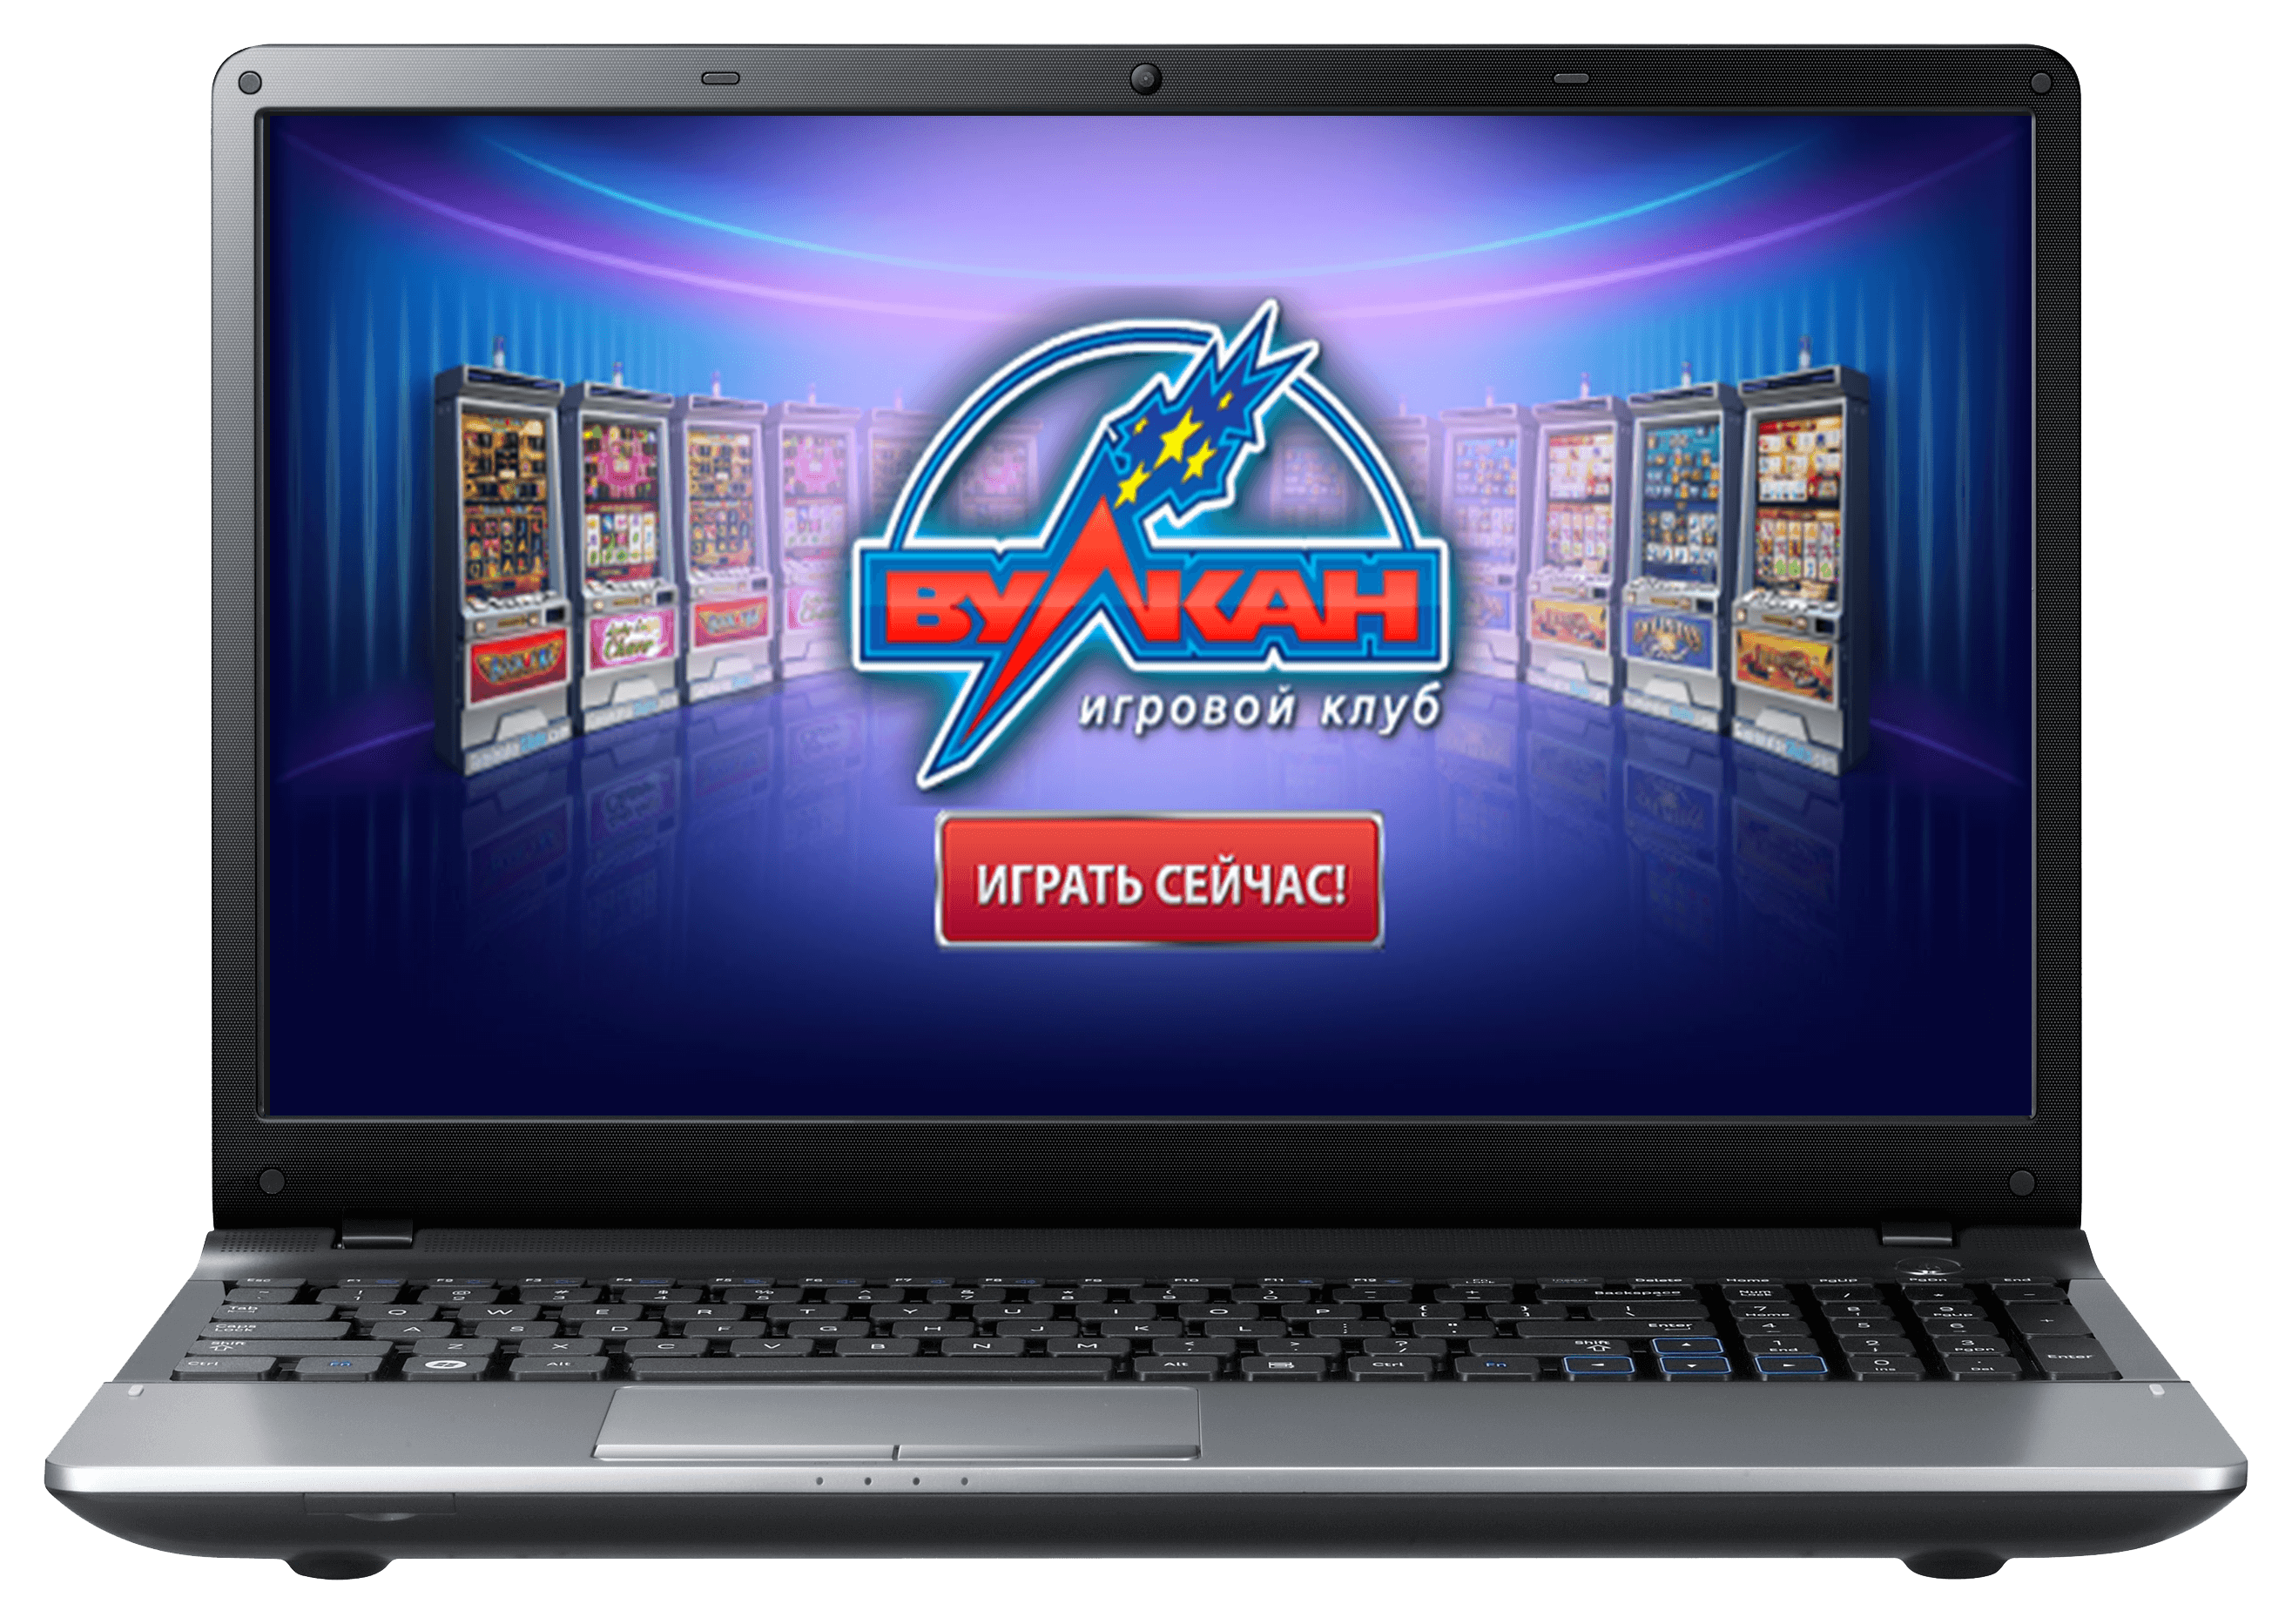 Игровое казино вулкан онлайн на деньги как открыть букмекерскую контору по франшизе спб